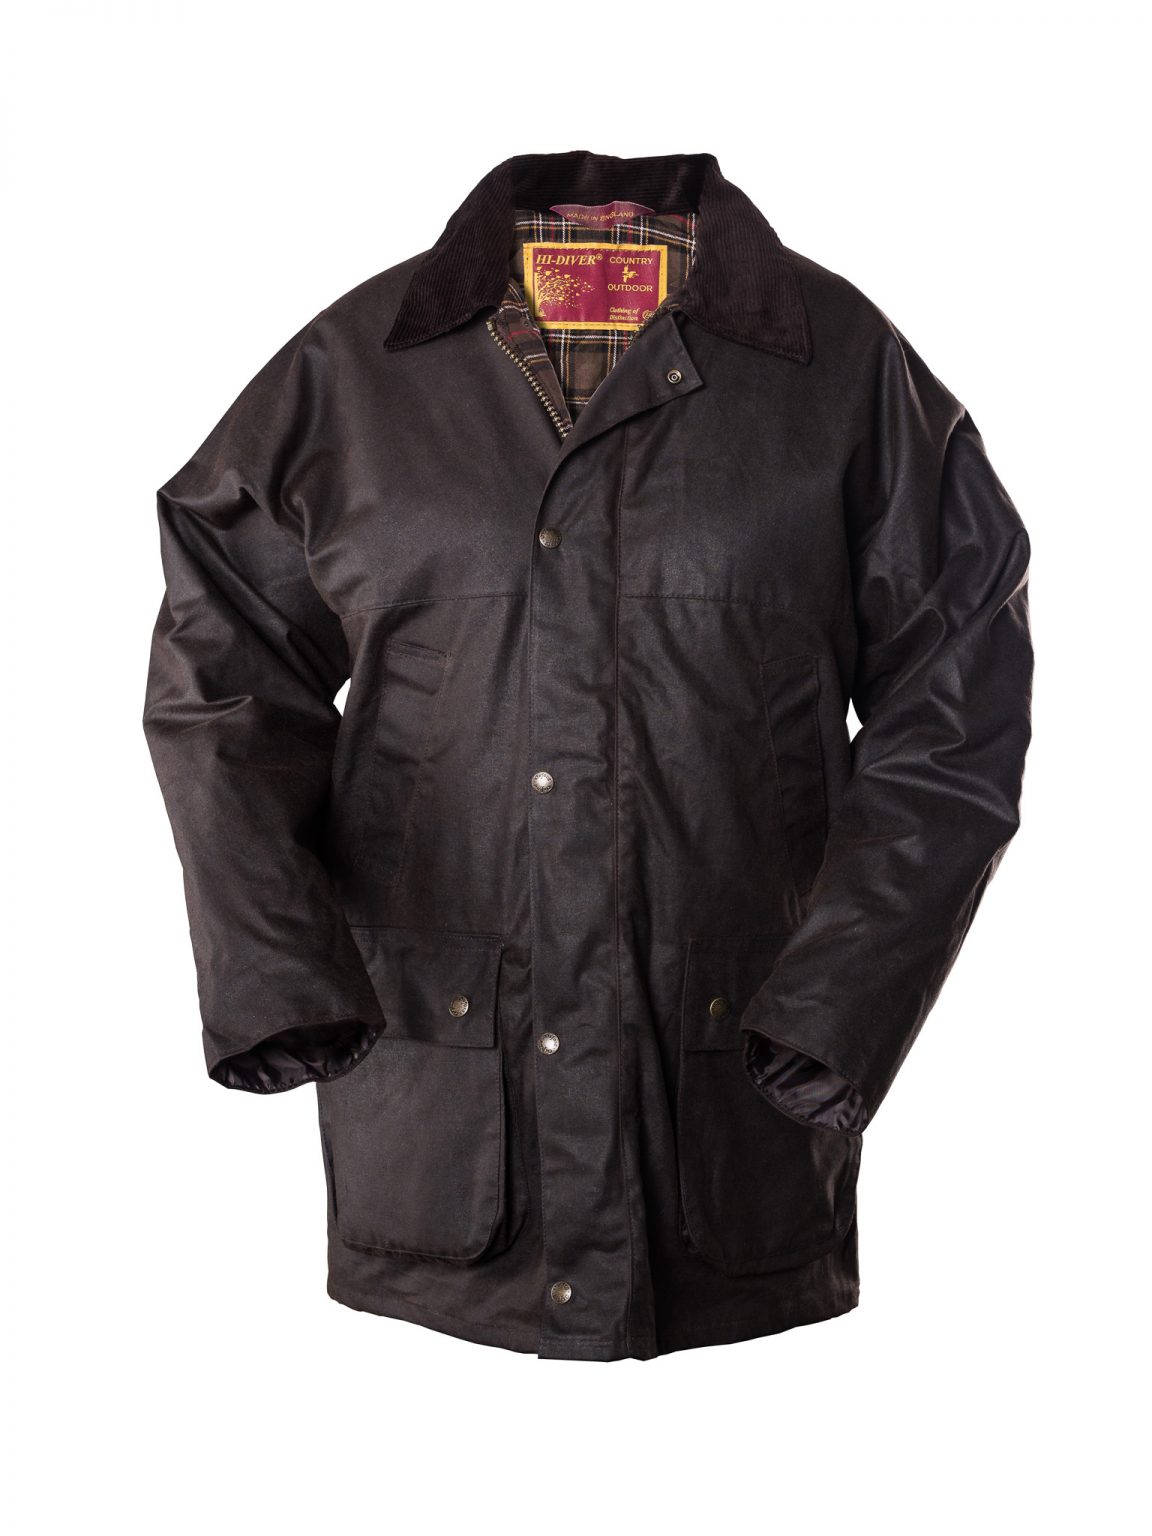 EdinburghOutdoorWear Mens Wax Jacket Brown - Edinburgh Outdoor Wear